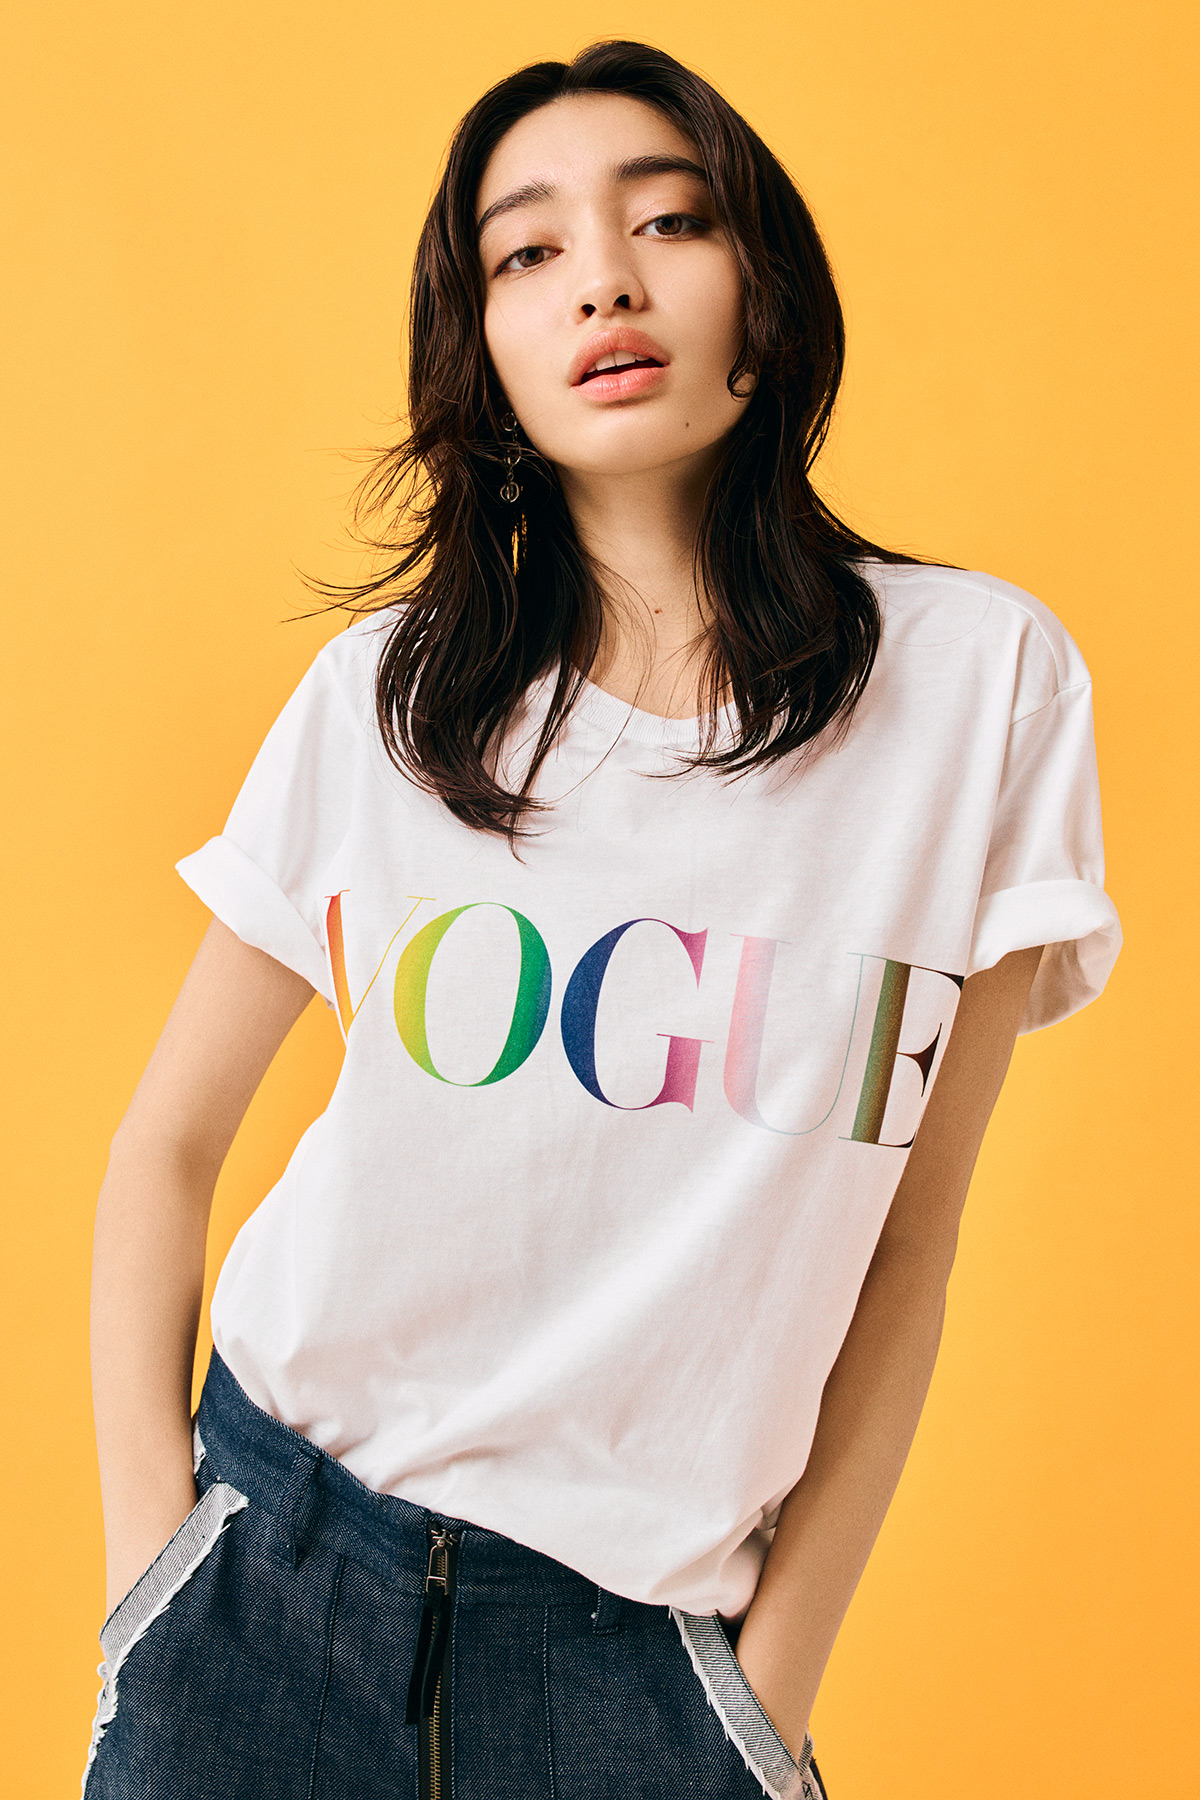 プライド月間2022「VOGUE Collection」レインボーカラーロゴのTシャツ 